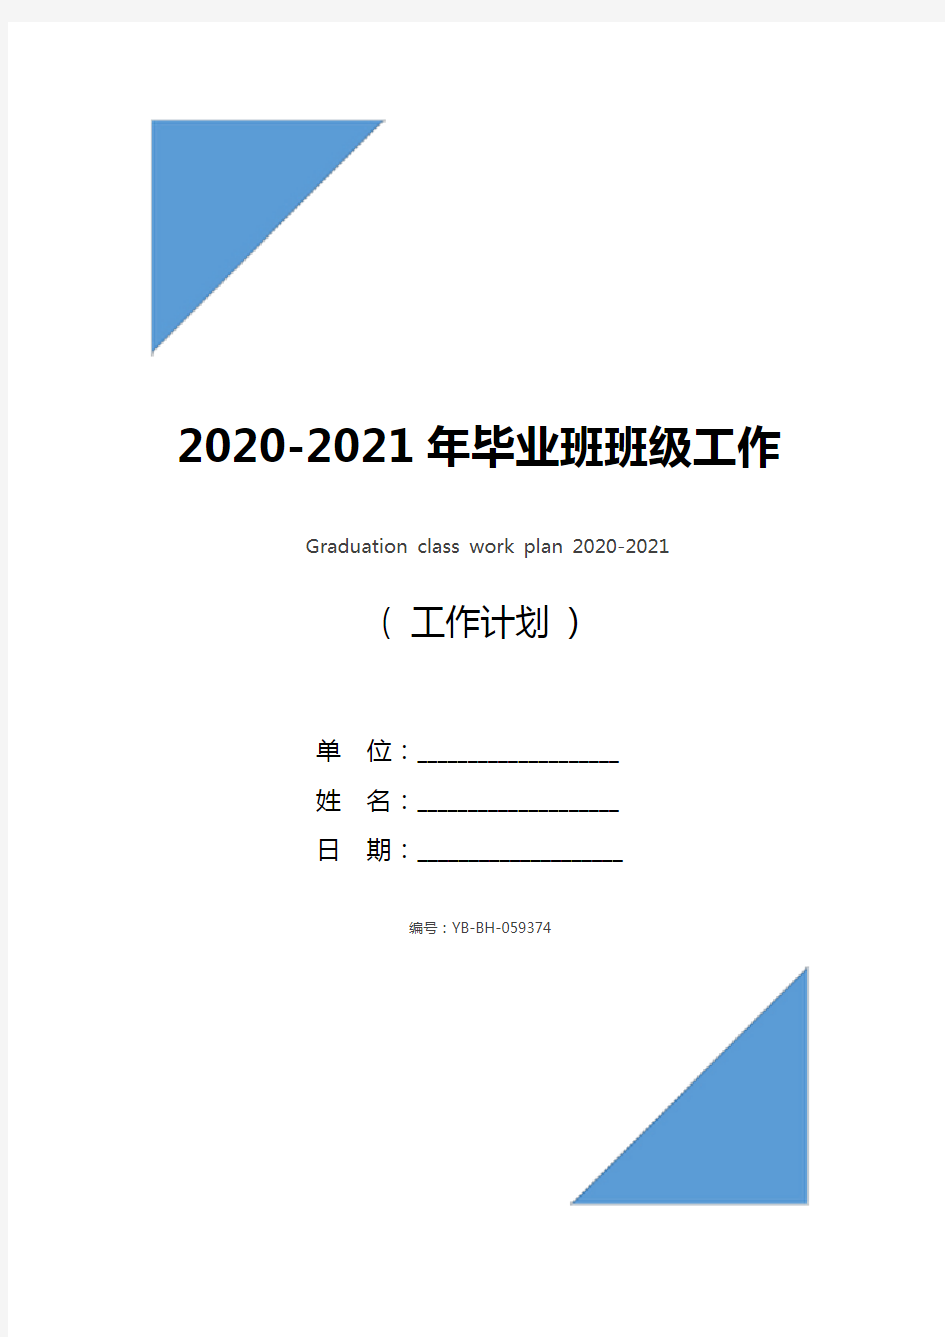 2020-2021年毕业班班级工作计划